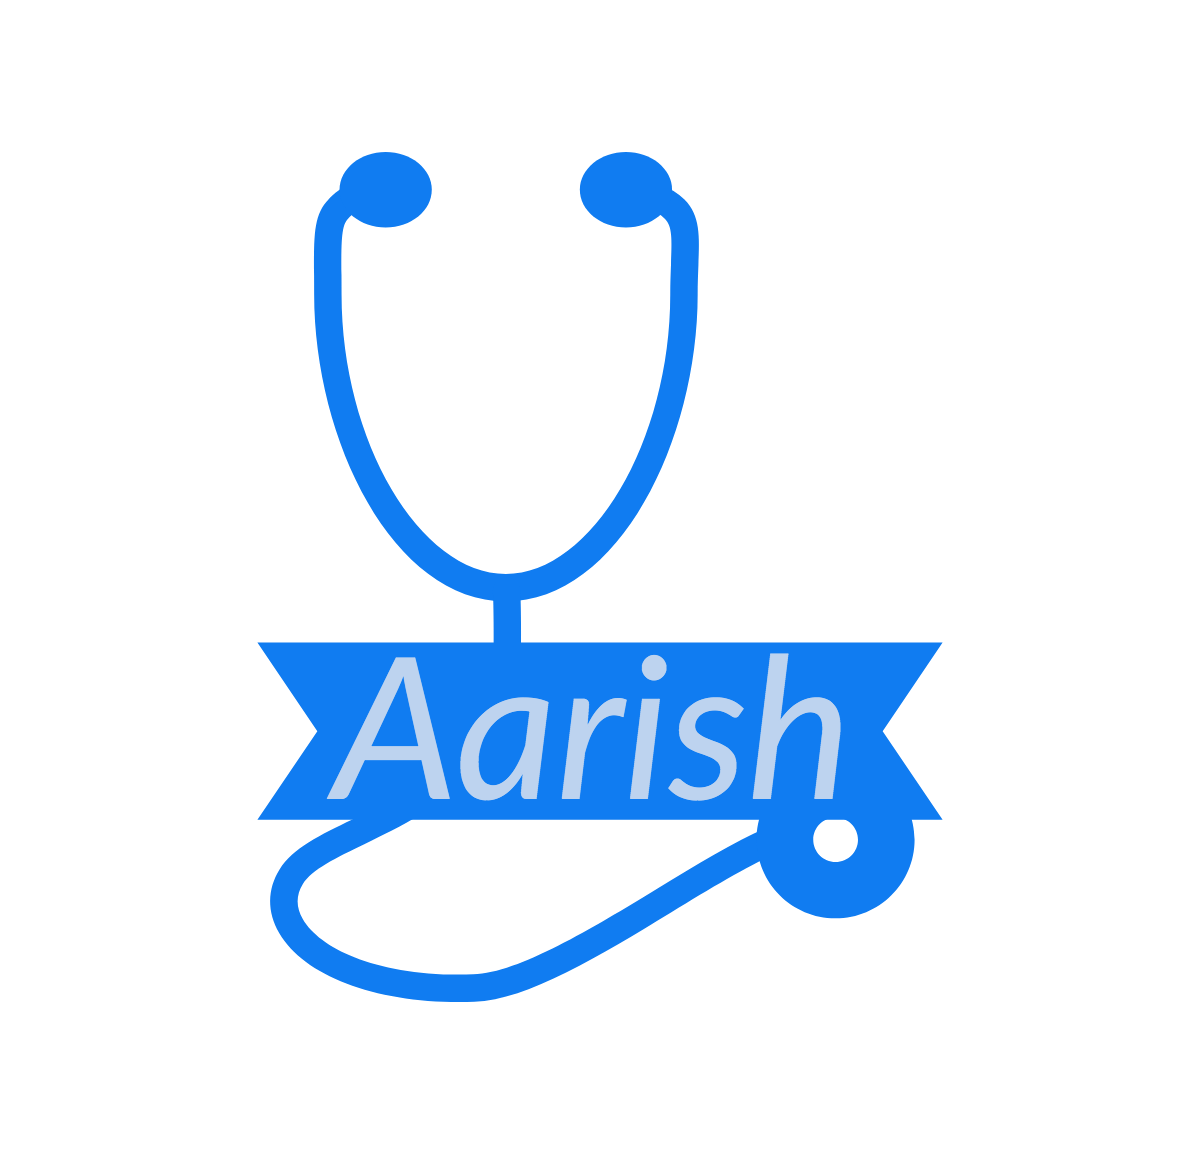 Aarish's blog